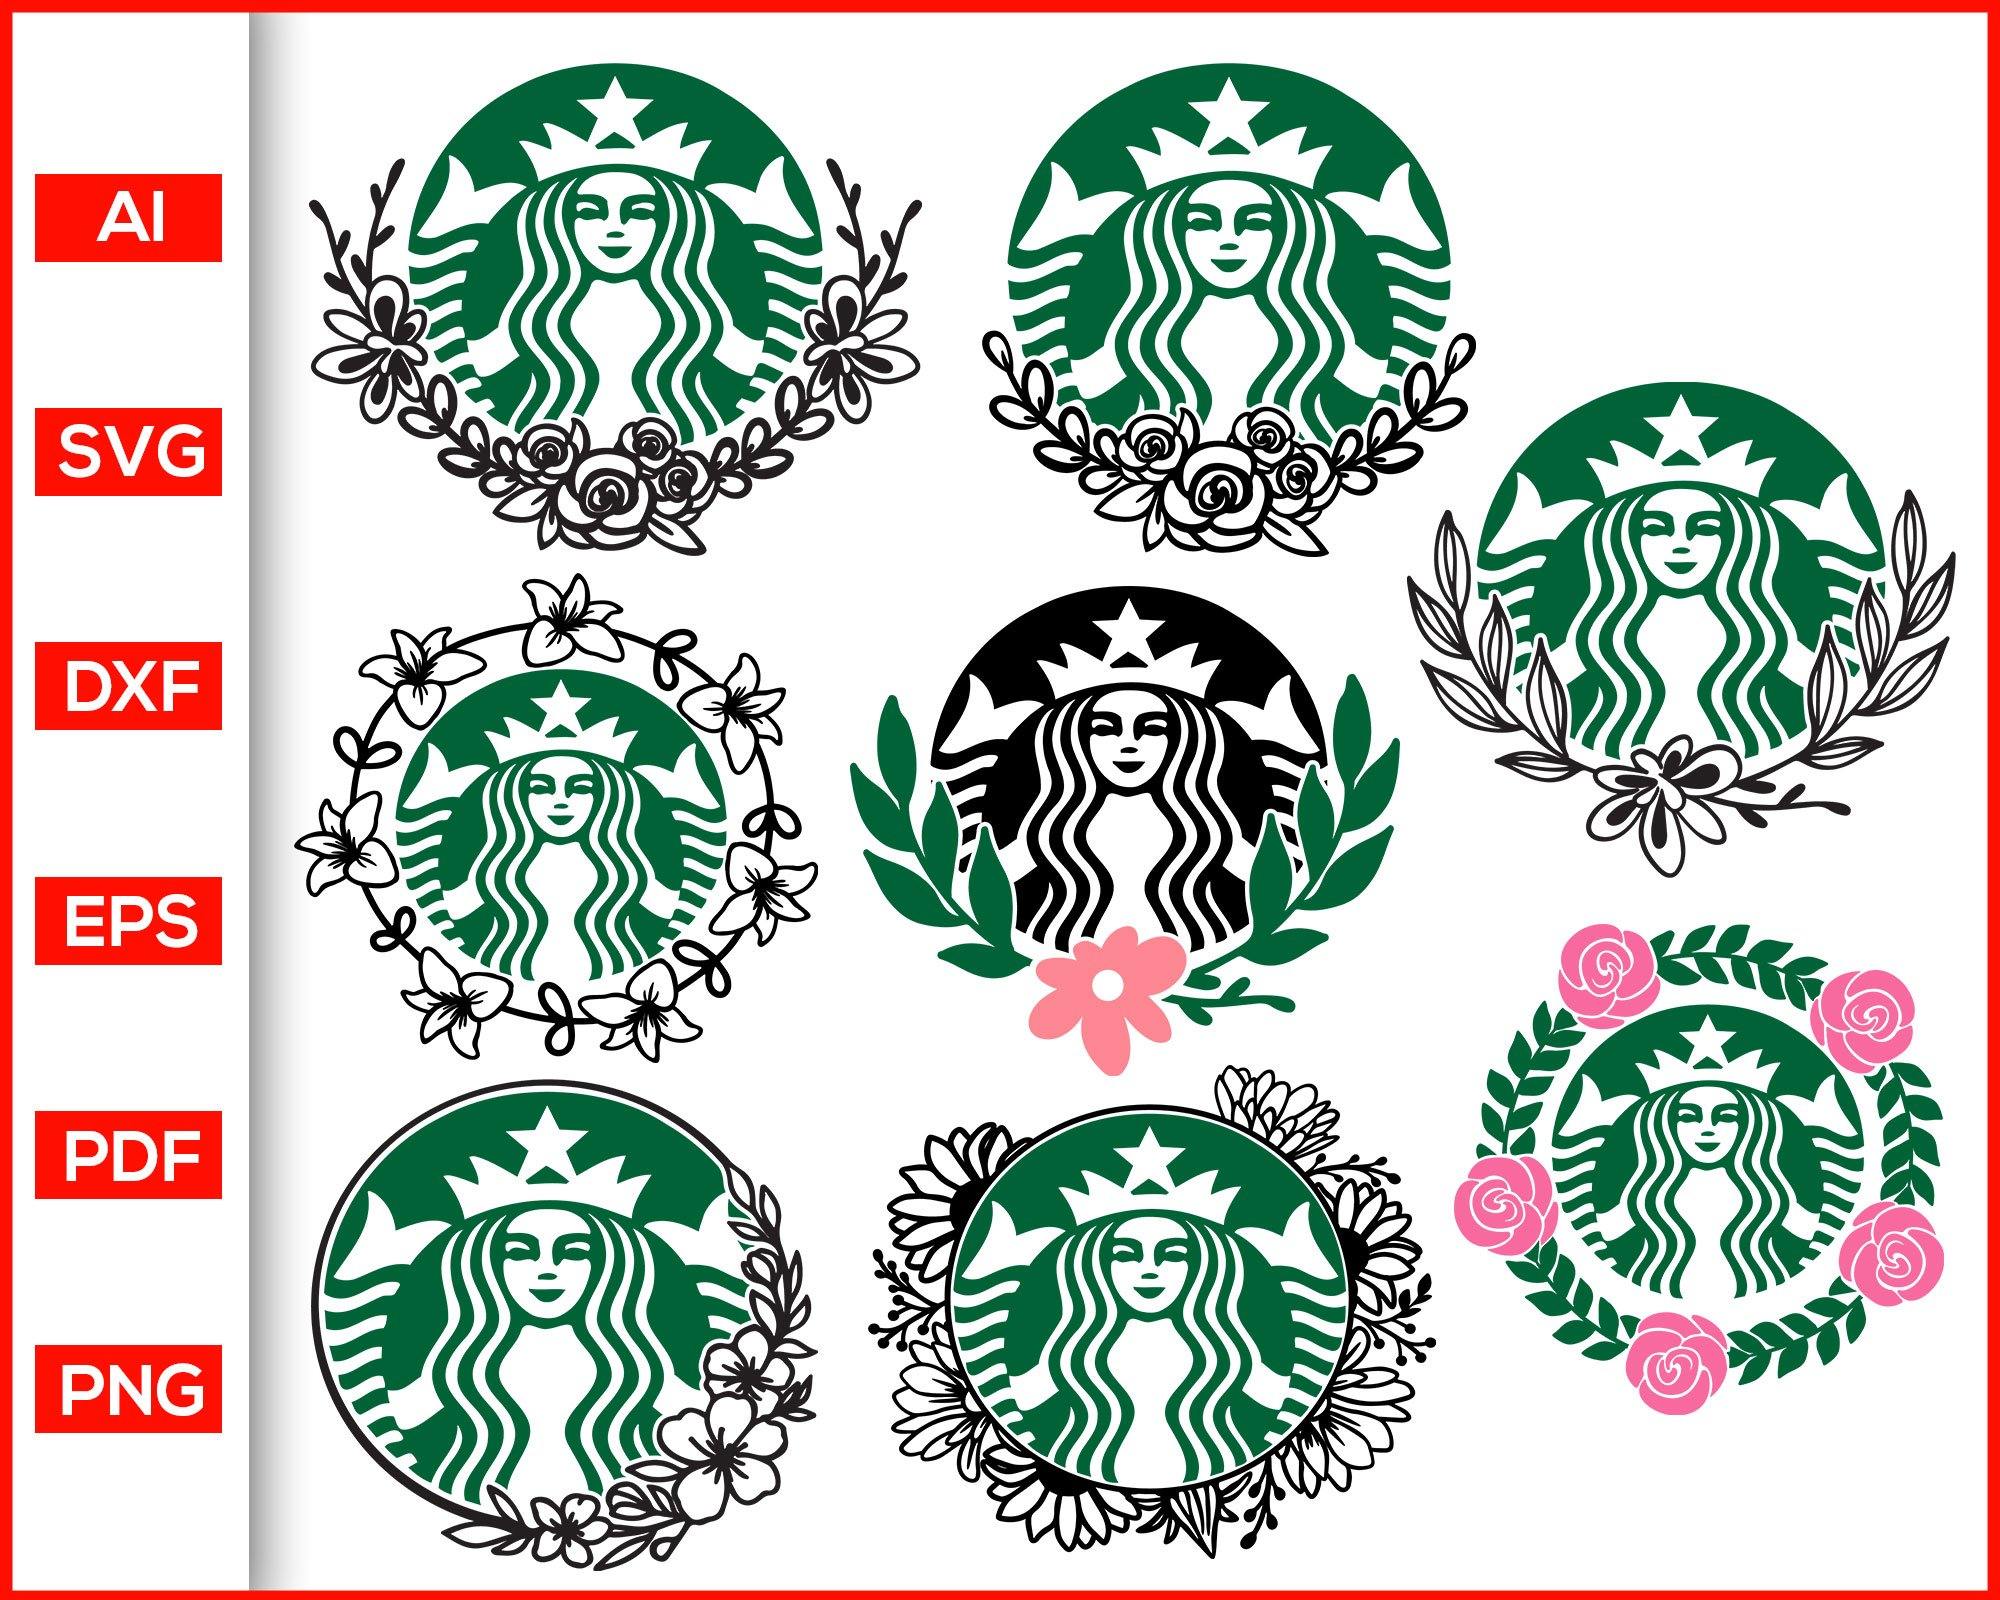 Download Floral Starbucks Svg Bundle Starbucks Designs For Coffee Mug Cup Editable Svg File